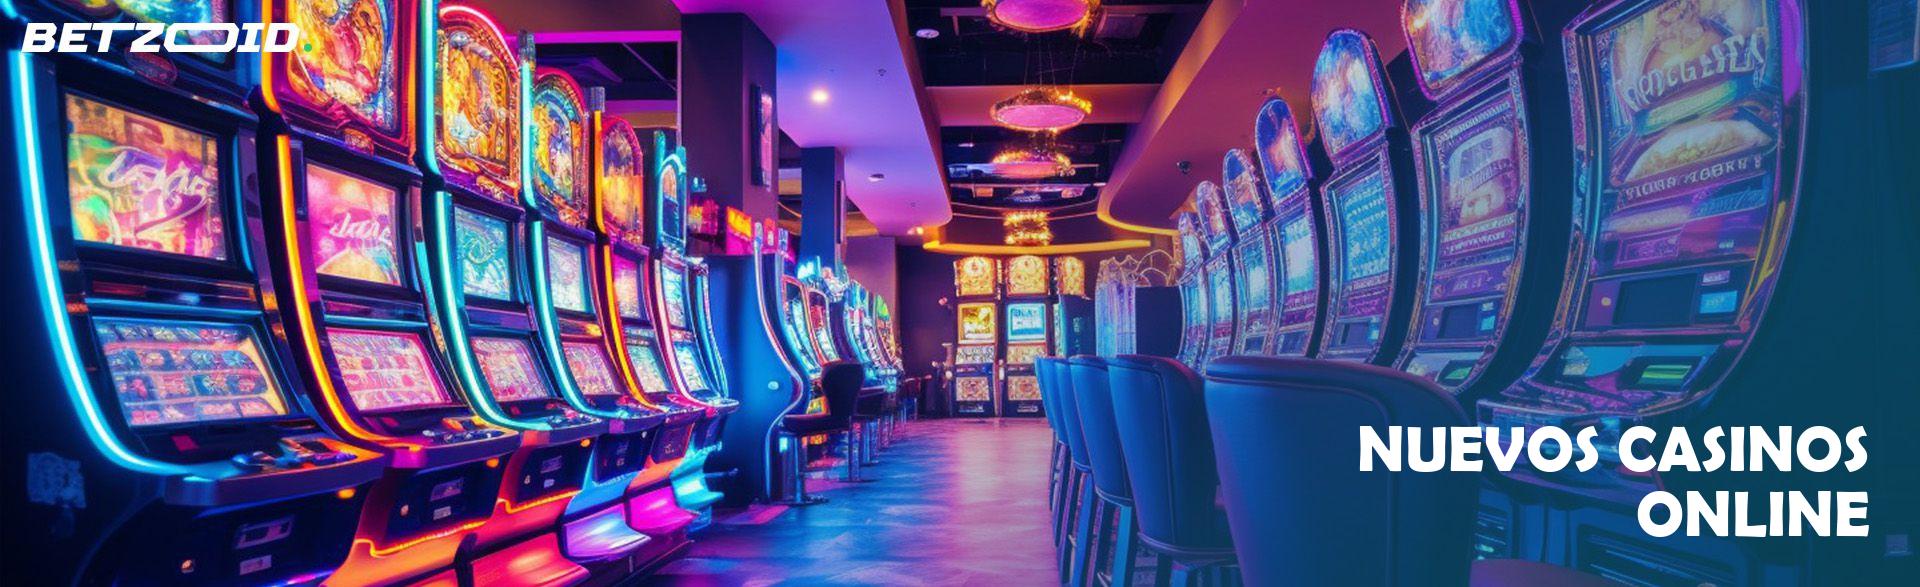 Nuevos Casinos Online.